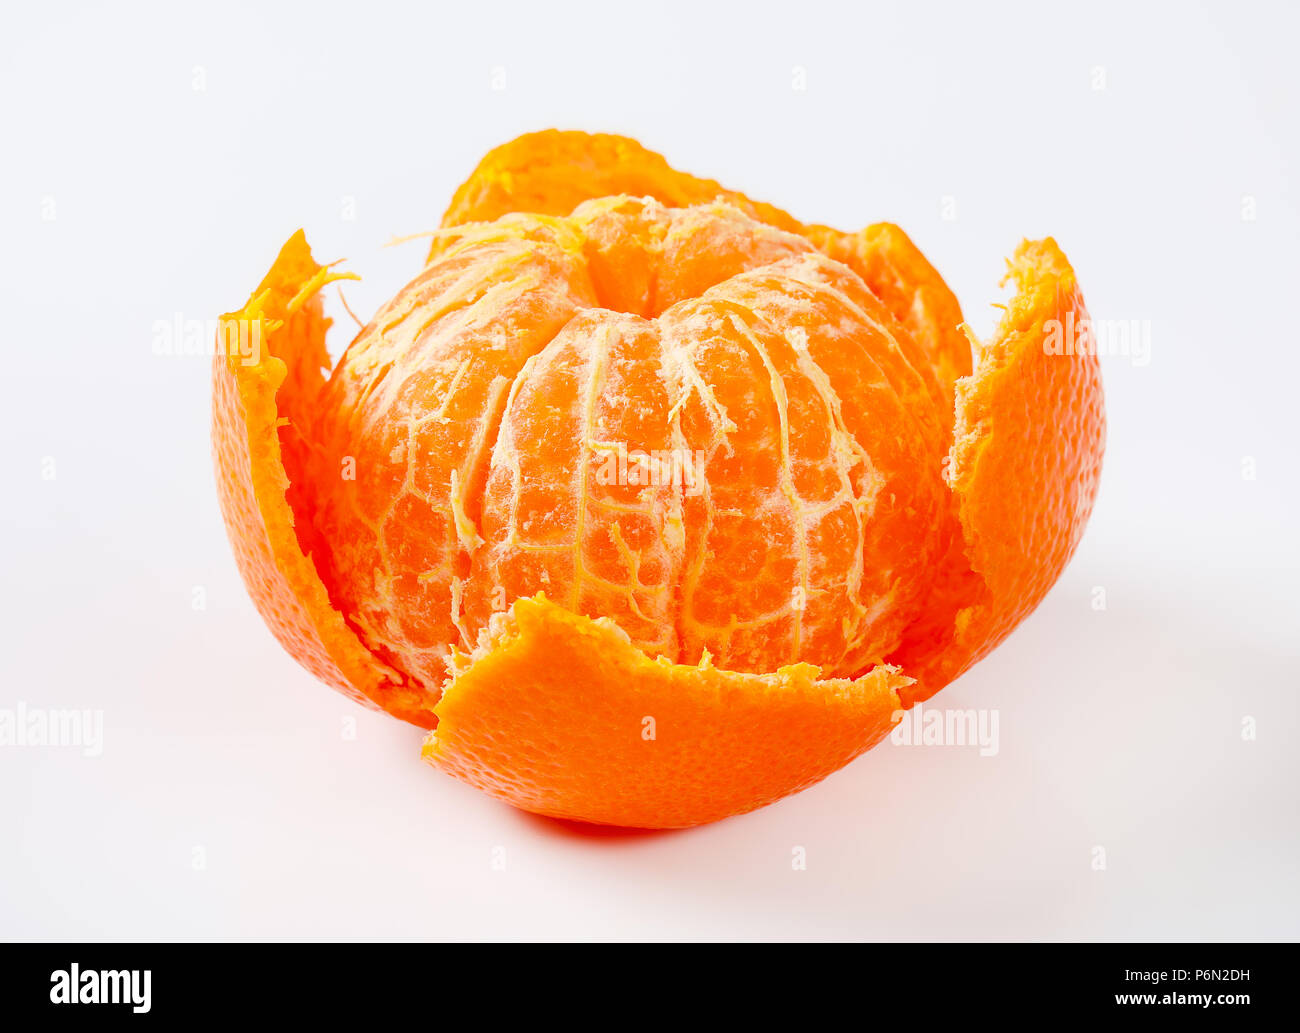 peeled ripe tangerine on white background Stock Photo